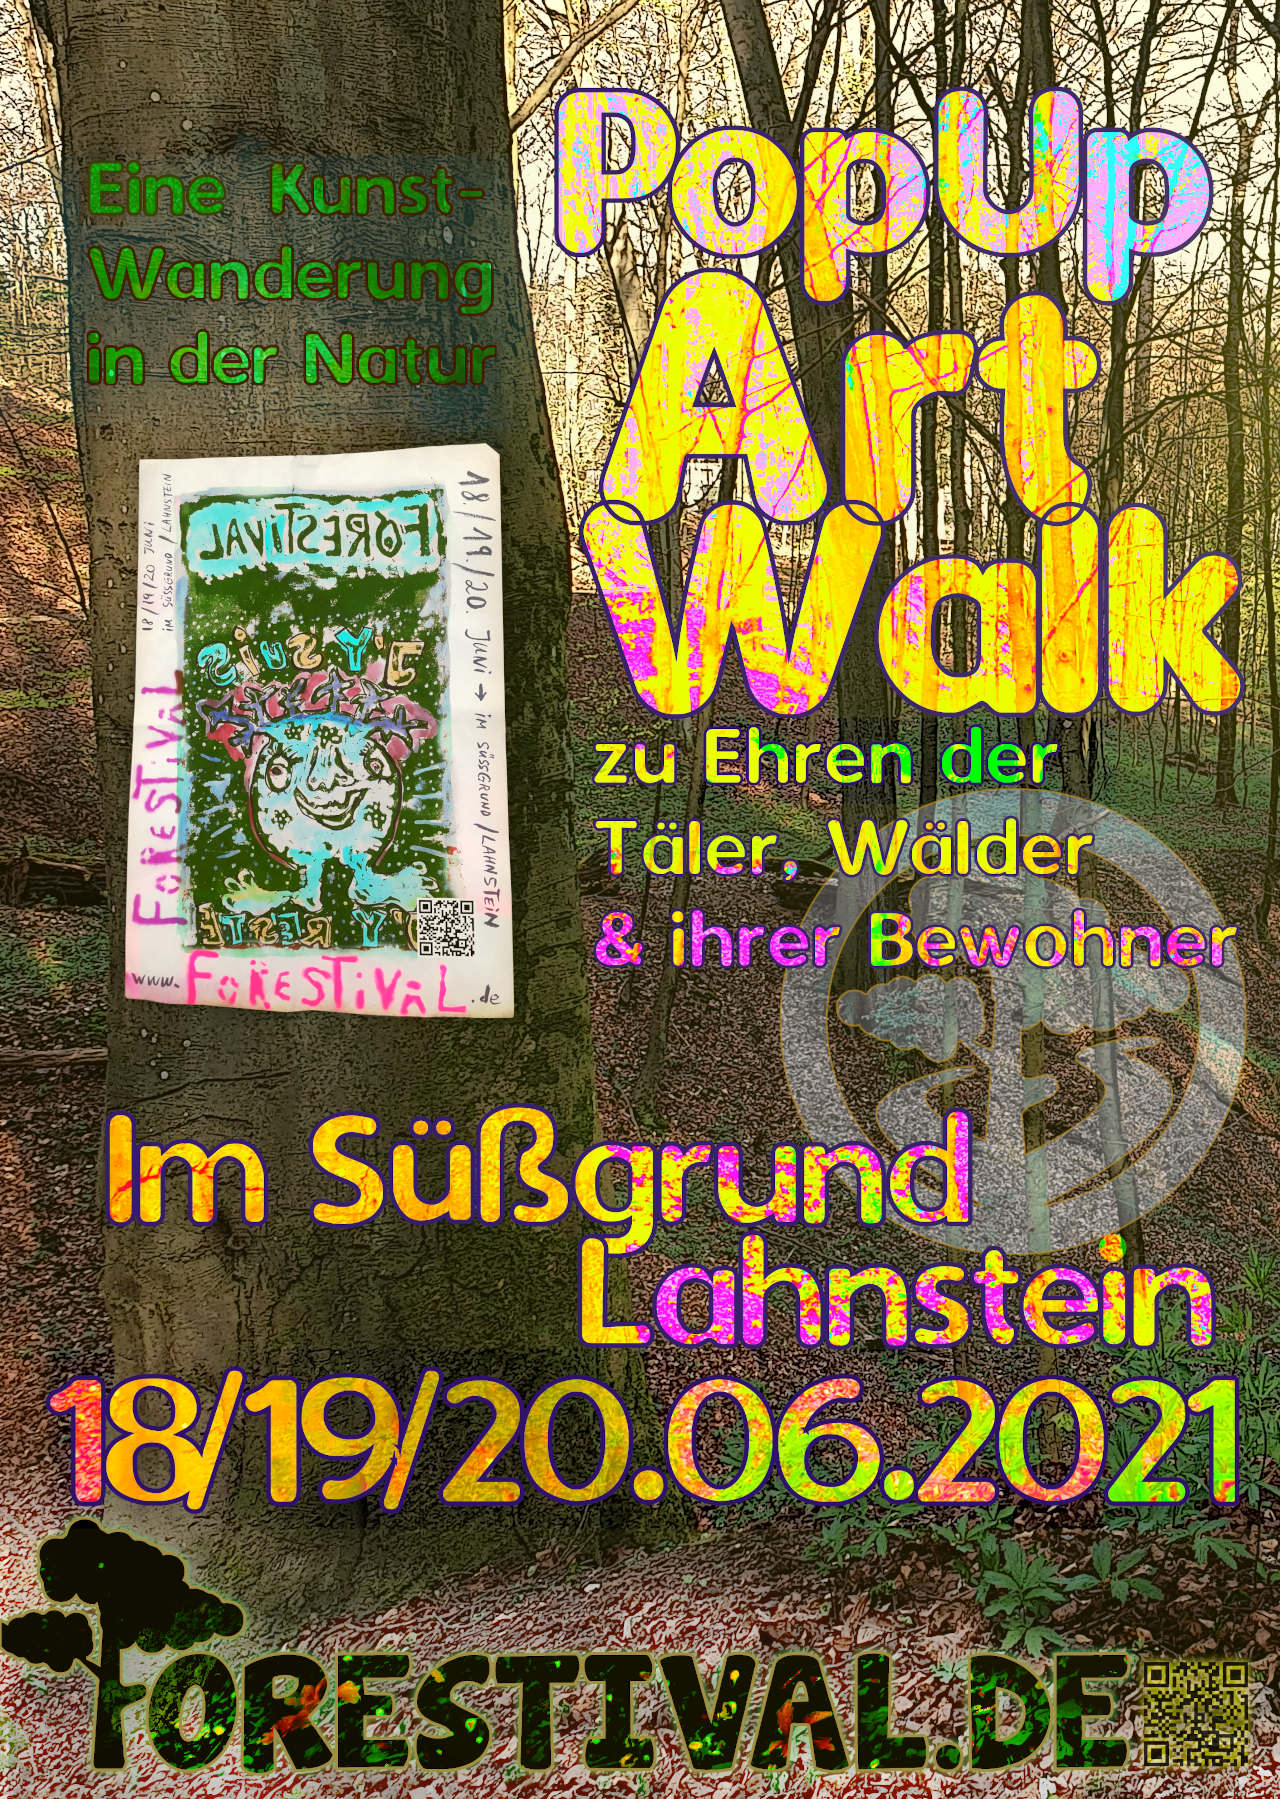 Forestival -ArtWalk 2021- in Lahnstein im Süßgrund